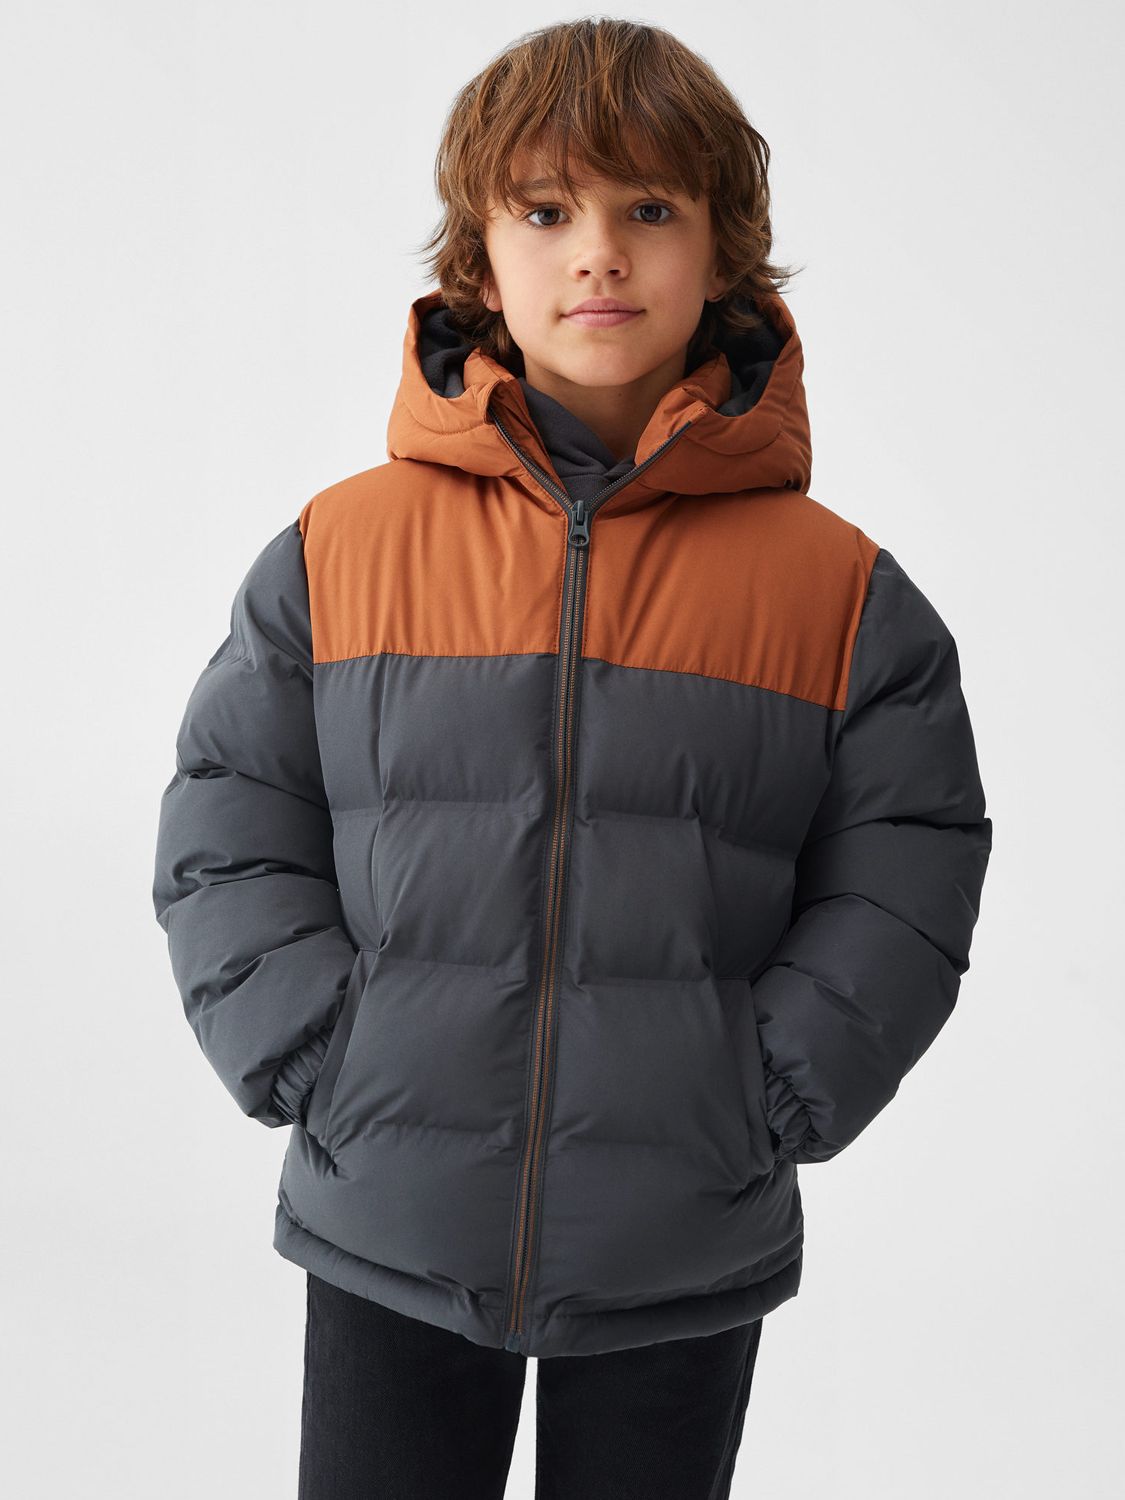 Mango Kids' Alaska Puffer Jacket, Multi at John Lewis & Partners